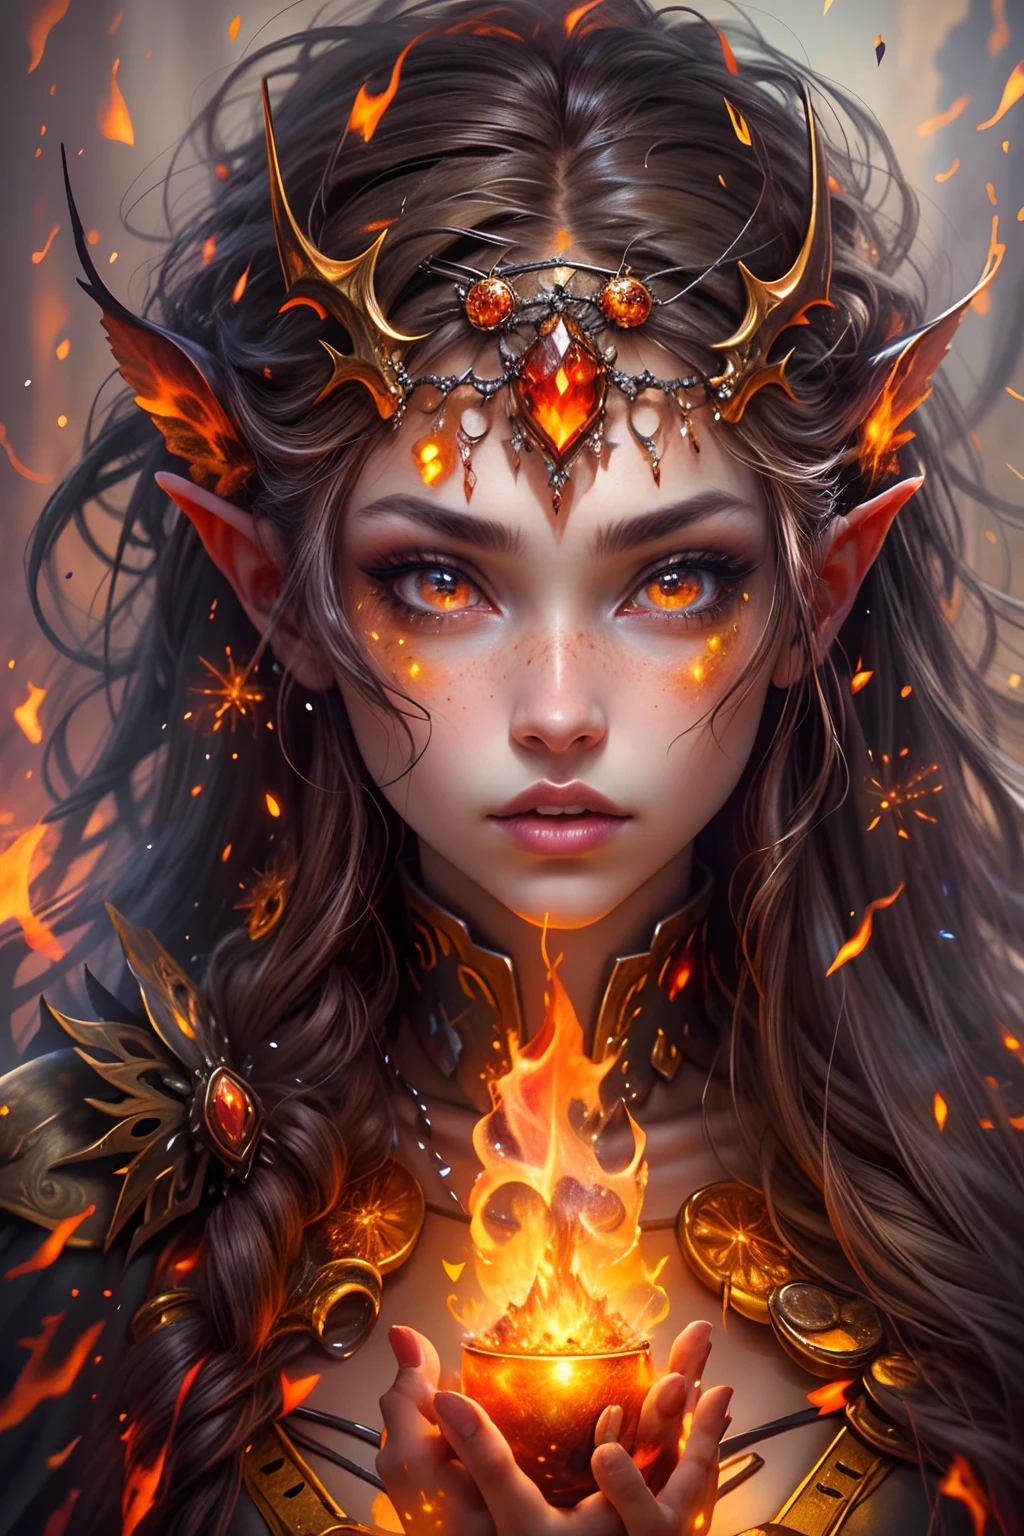 Generate a masterpiece artwork of a  female fire druid と orange and gold large eyes. これ (現実的なファンタジー) 芸術には残り火が含まれている, 本物の炎, 本当の熱, リアルな火. The fire druid is awe-inspiring と beautiful ((リアルな燃えるような目)) alight と confidence and power. 彼女の顔立ちは優雅ではっきりしている, と puffy and kissable lips, エルフのような骨の構造, リアルな陰影. 彼女の目は重要であり、この作品の焦点となるべきである, と ((非常にリアルなディテール, マクロの詳細, きらめき.)) 彼女は、炎の光の中できらめく本物の炎と宝石で作られた、ふわふわと輝くドレスを着ています。. バンプを含める, 石, 燃えるような虹彩, 燃える残り火, シルク、サテン、革, 興味深い背景, ファンタジー要素が強い.